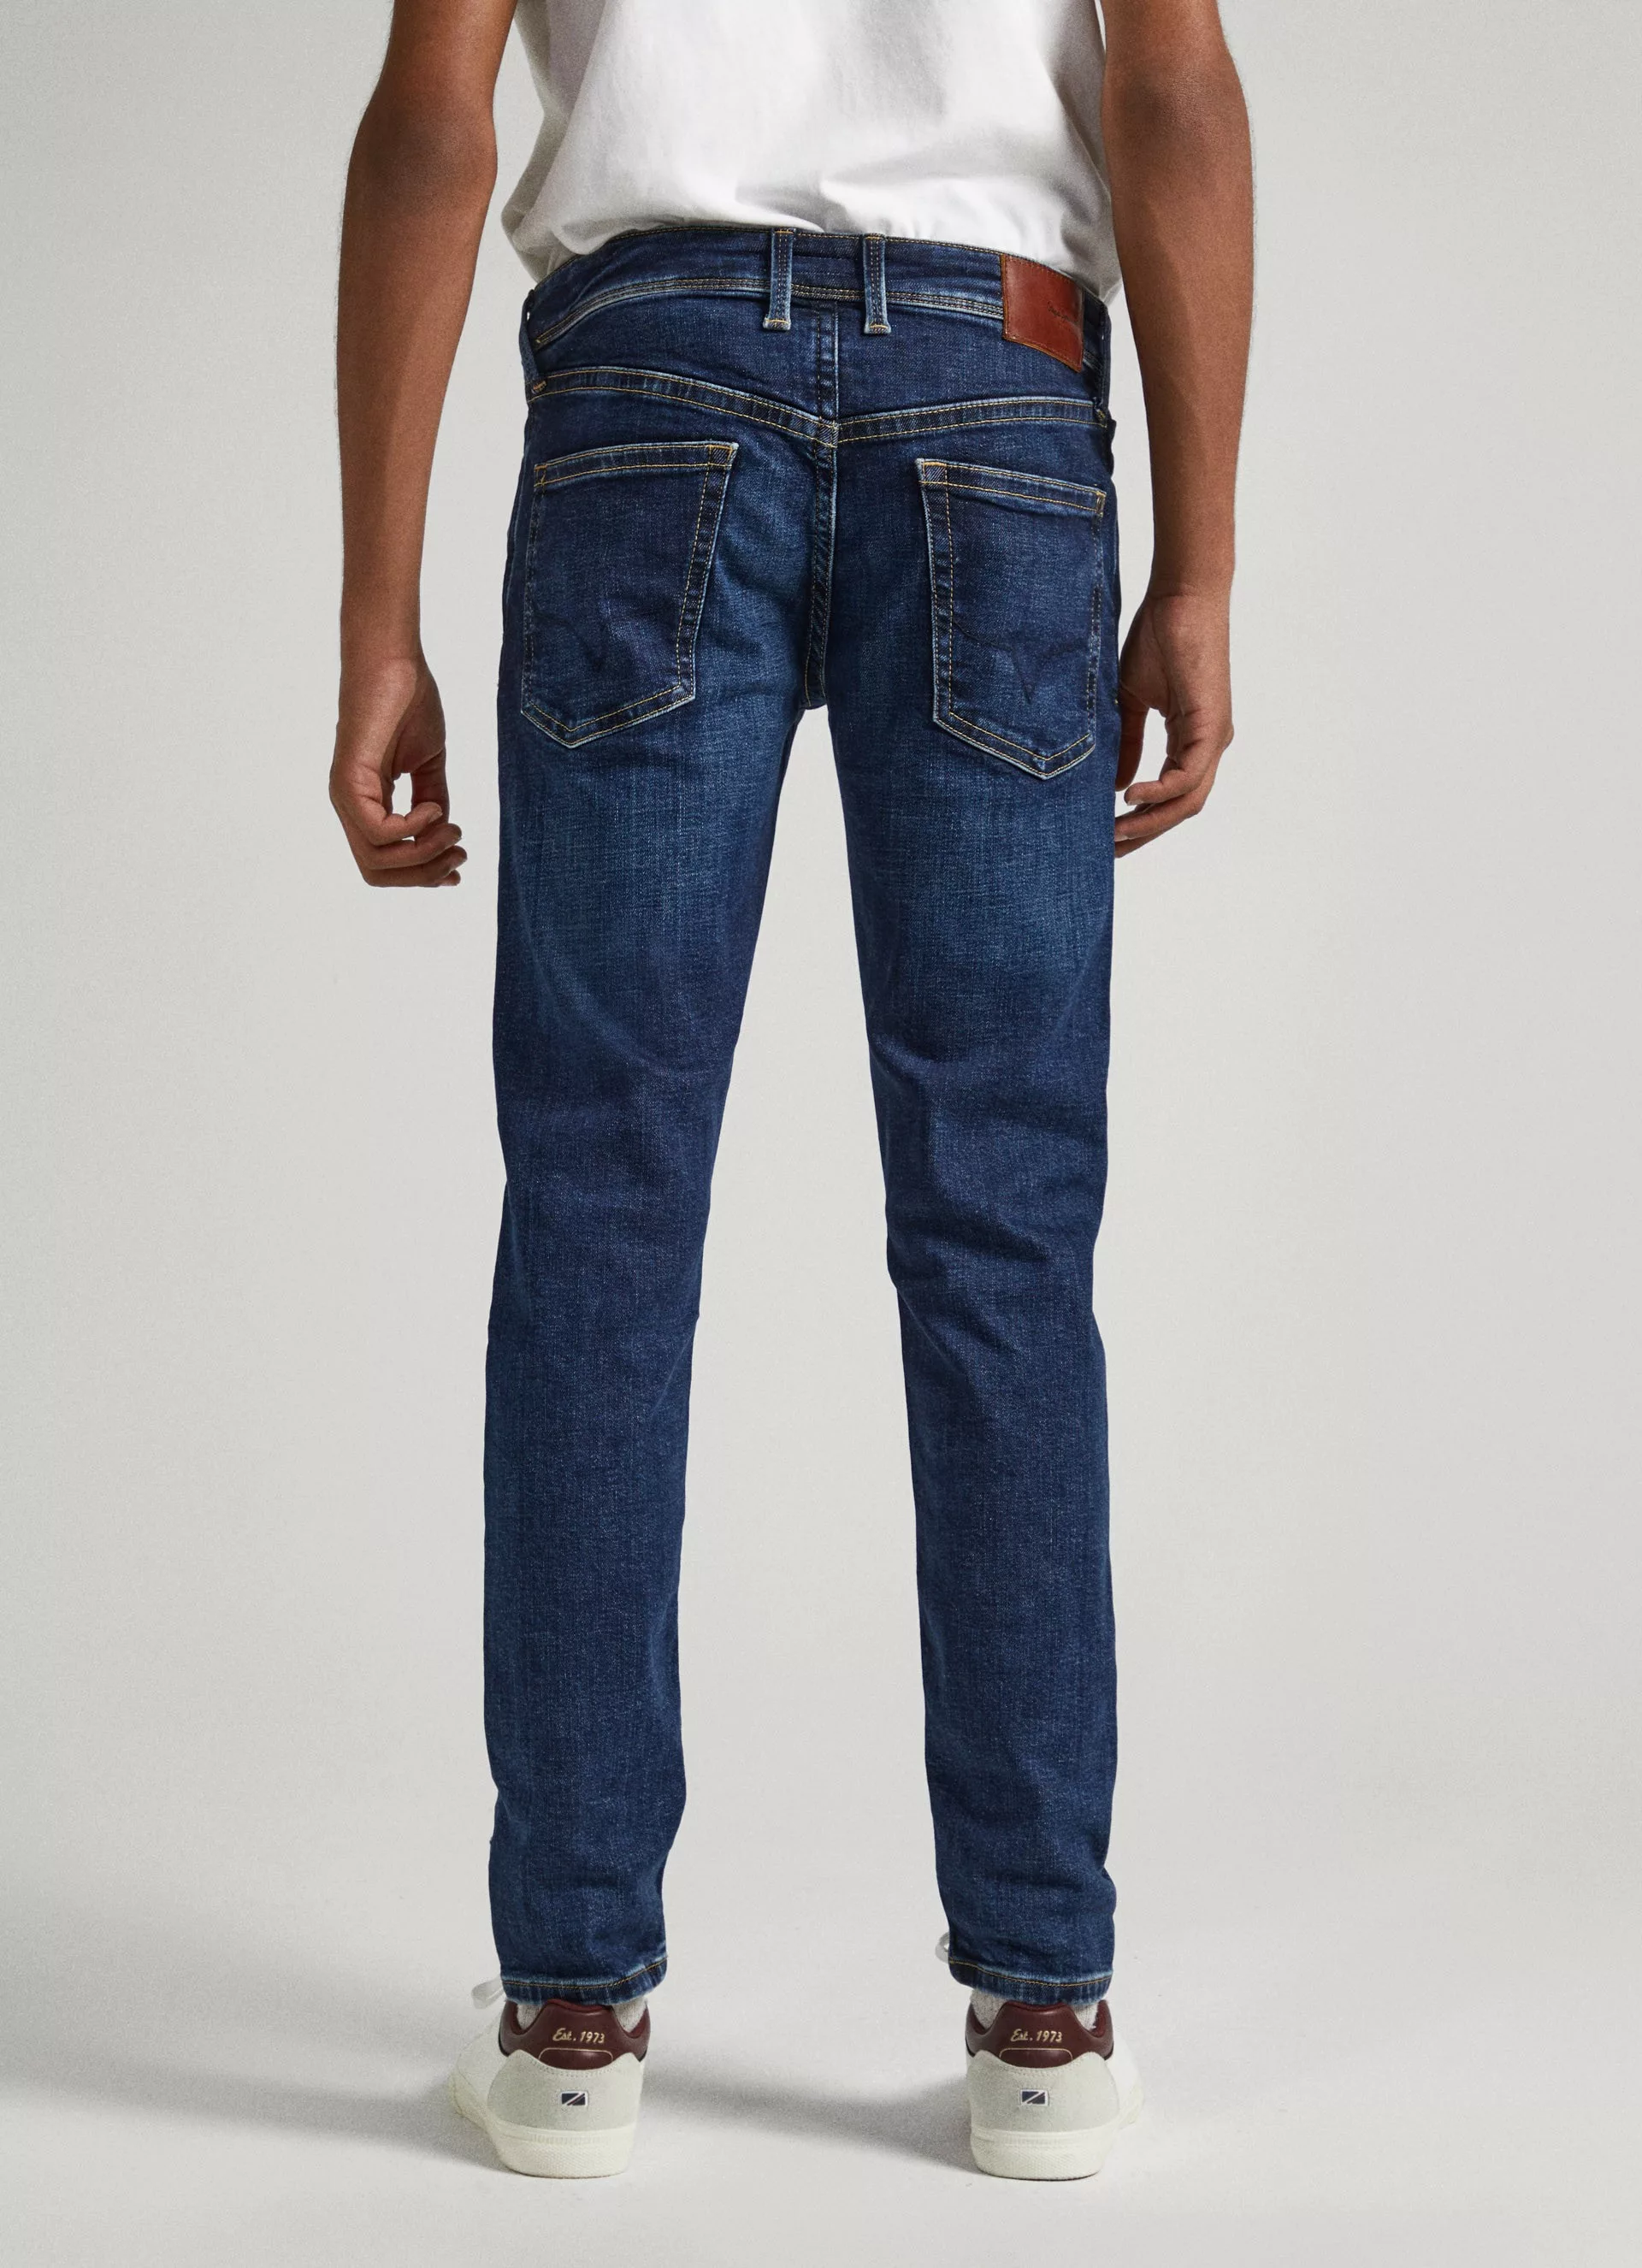 Pepe Jeans Herren Jeans Cash - Regular Fit - Blau - Streaky Stretch Medium günstig online kaufen